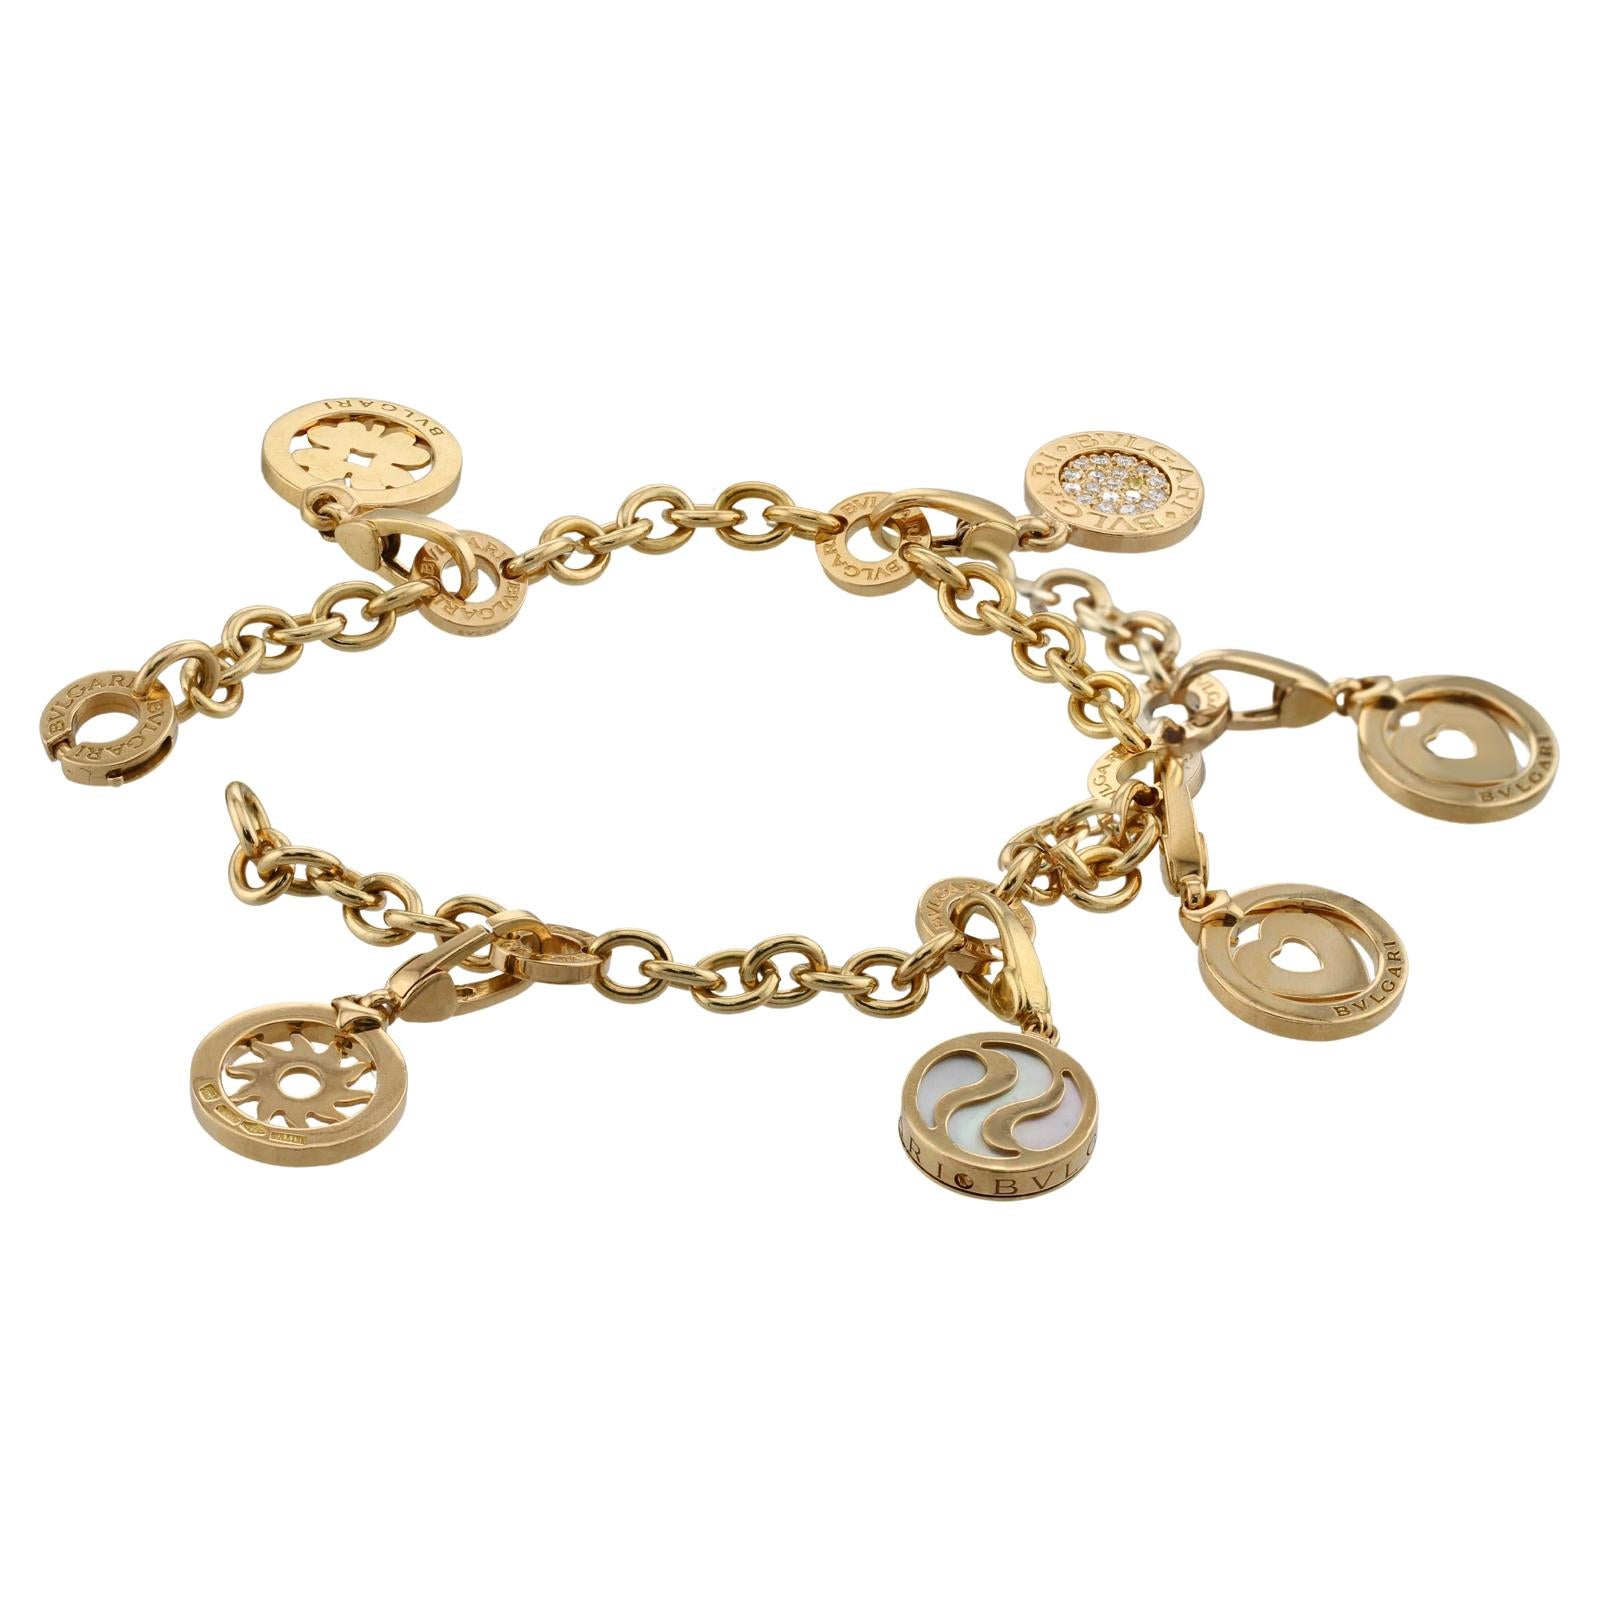 Ce magnifique bracelet Bvlgari est réalisé en or jaune 18 et comporte 5 charms ronds, à savoir un cœur, un trèfle, un soleil, un cercle en nacre et un pavé E-F-G.        Cercle de diamants VVS1-VVS2. Chaque charme porte l'inscription du logo